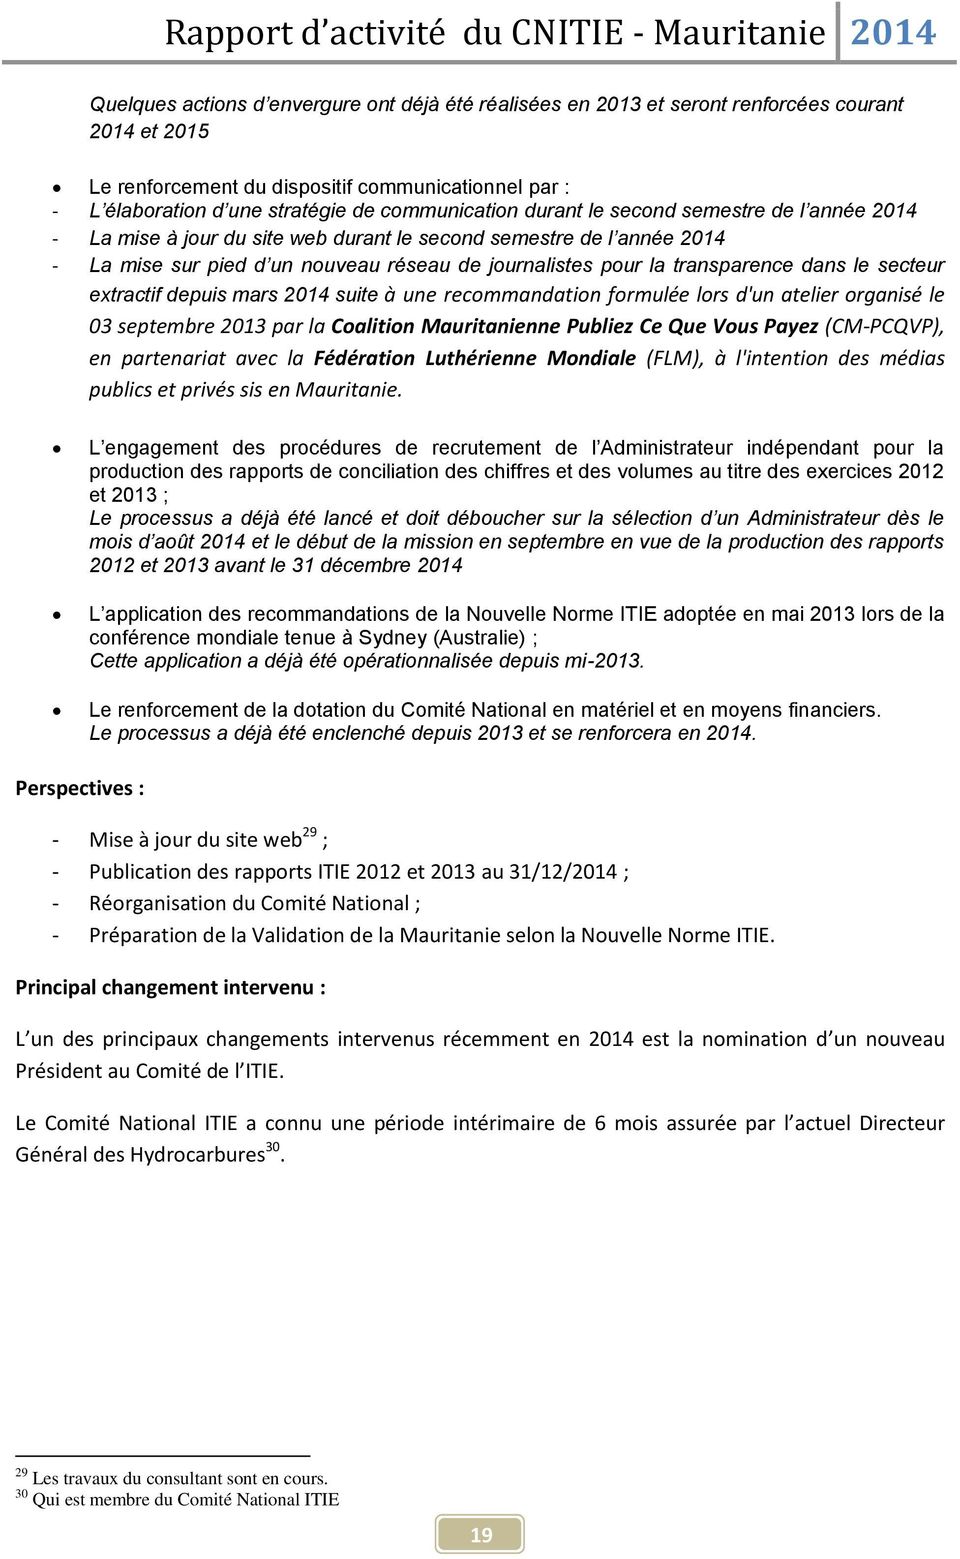 transparence dans le secteur extractif depuis mars 2014 suite à une recommandation formulée lors d'un atelier organisé le 03 septembre 2013 par la Coalition Mauritanienne Publiez Ce Que Vous Payez